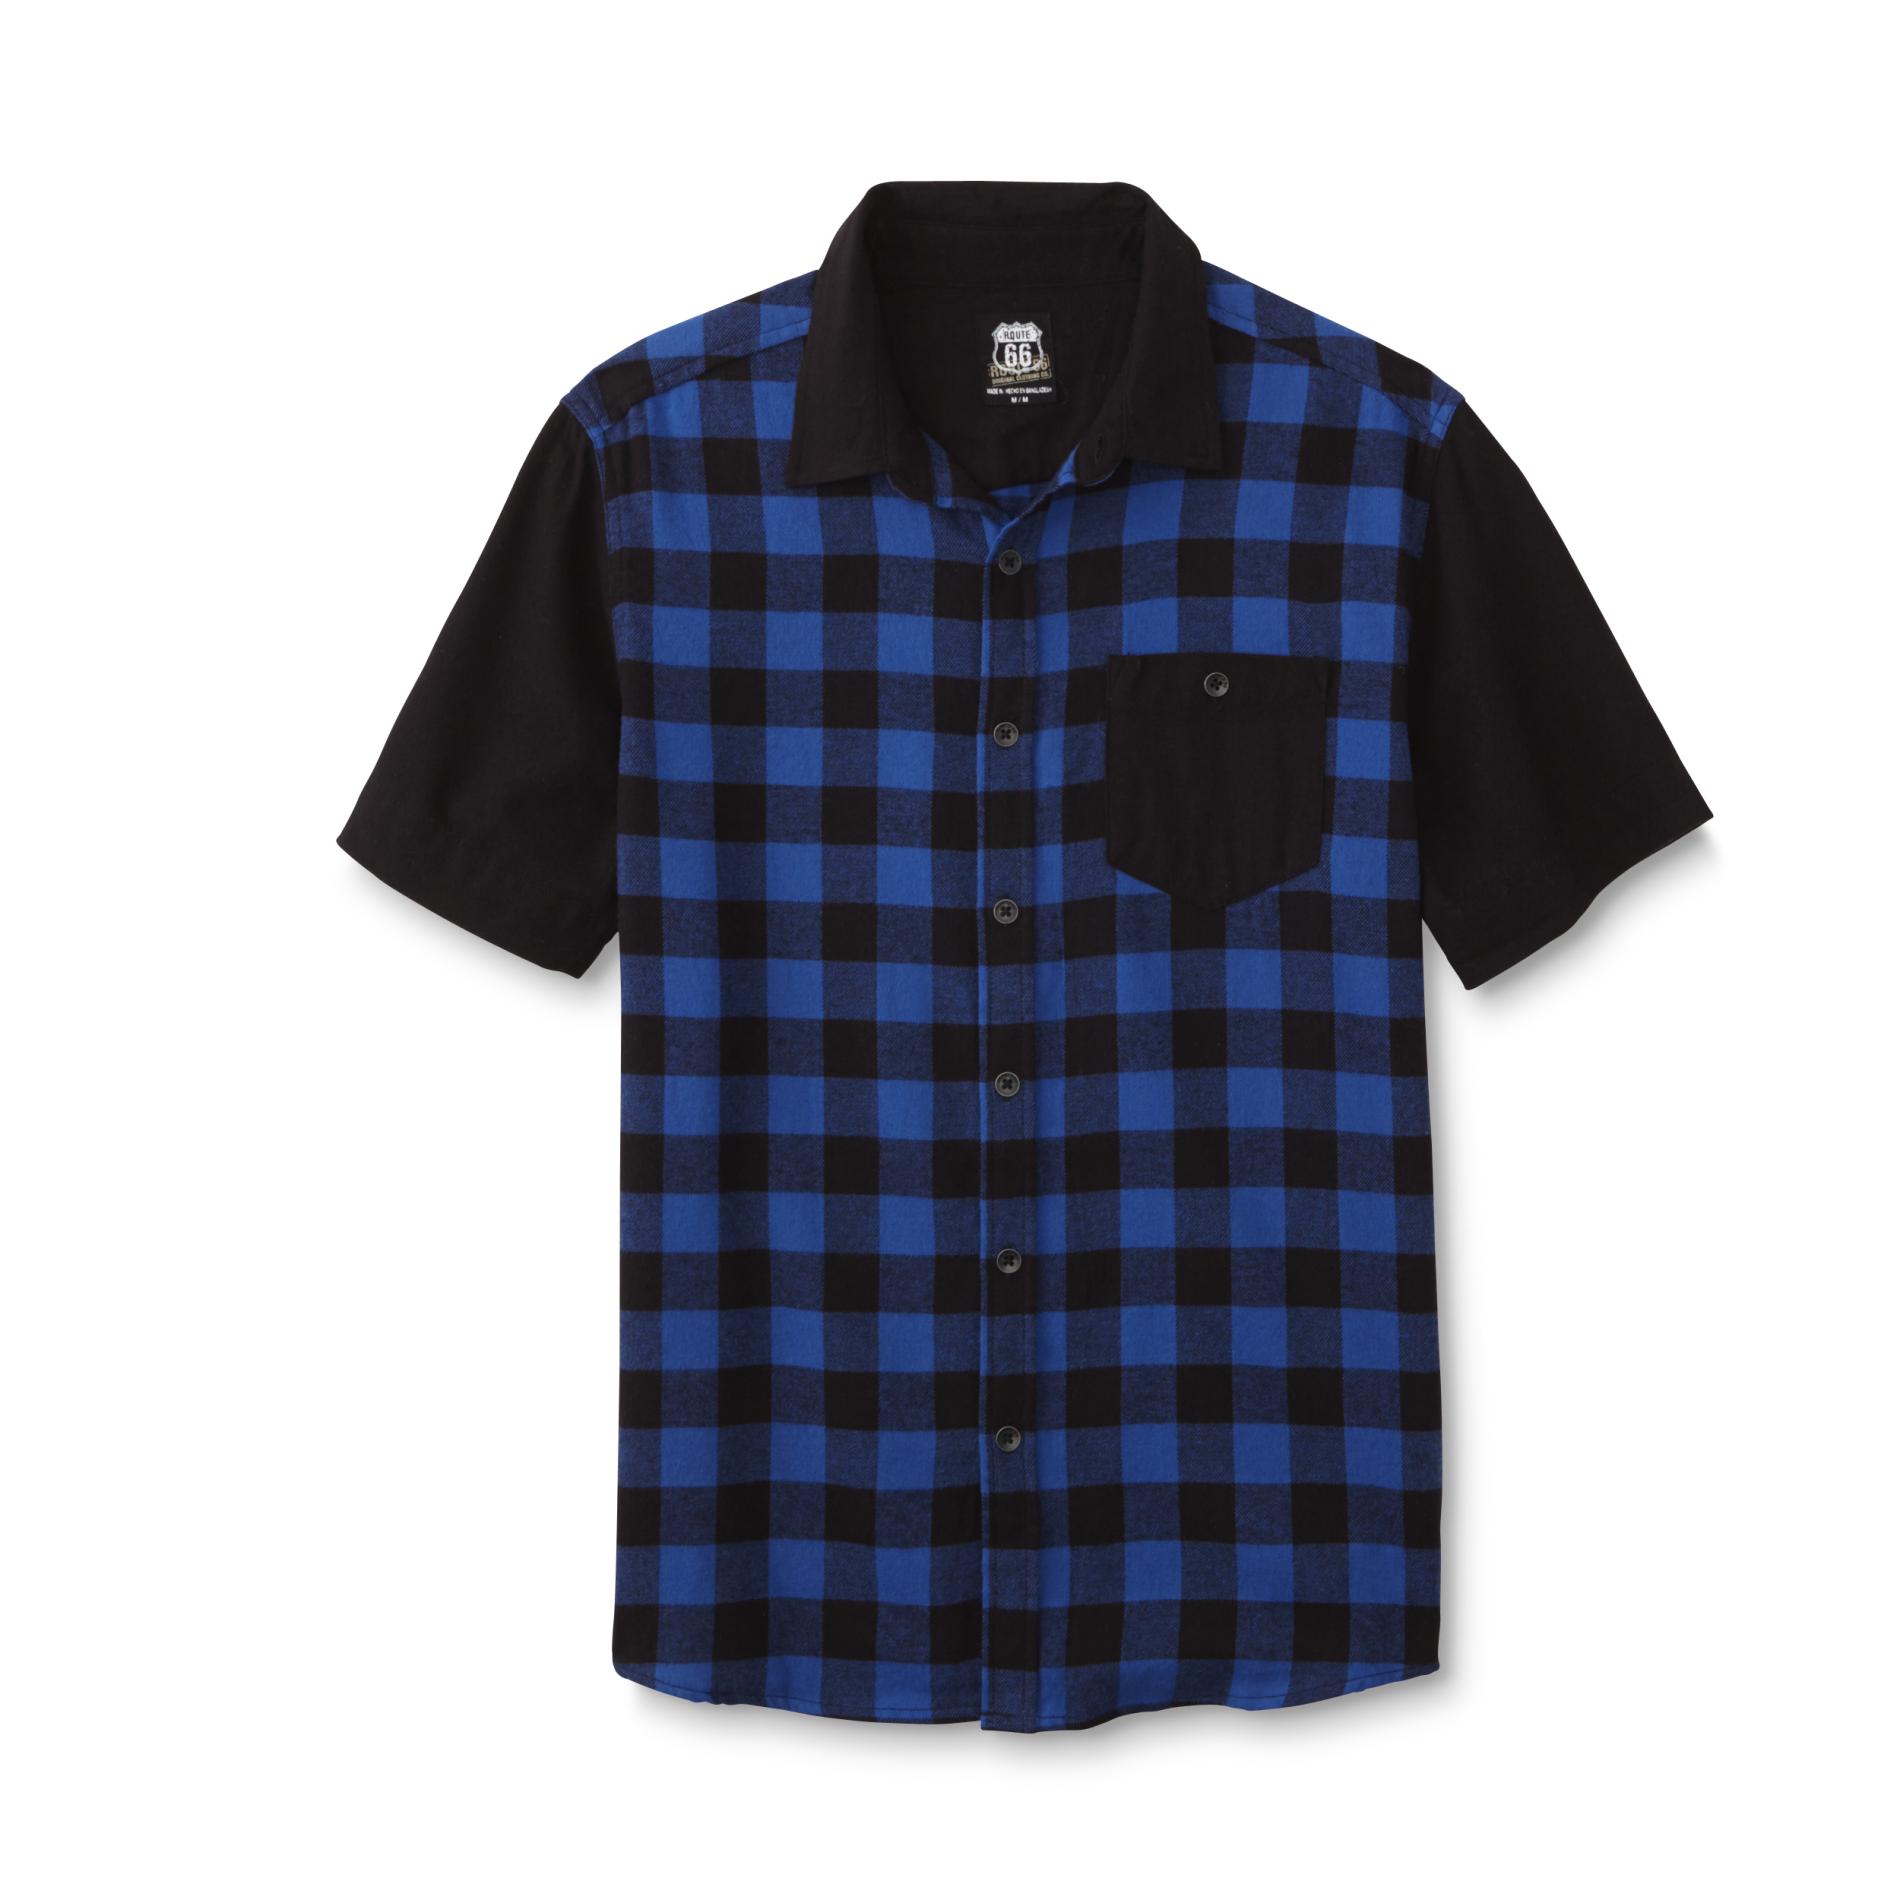 Route 66 Men's Short-Sleeve Flannel Shirt - Plaid